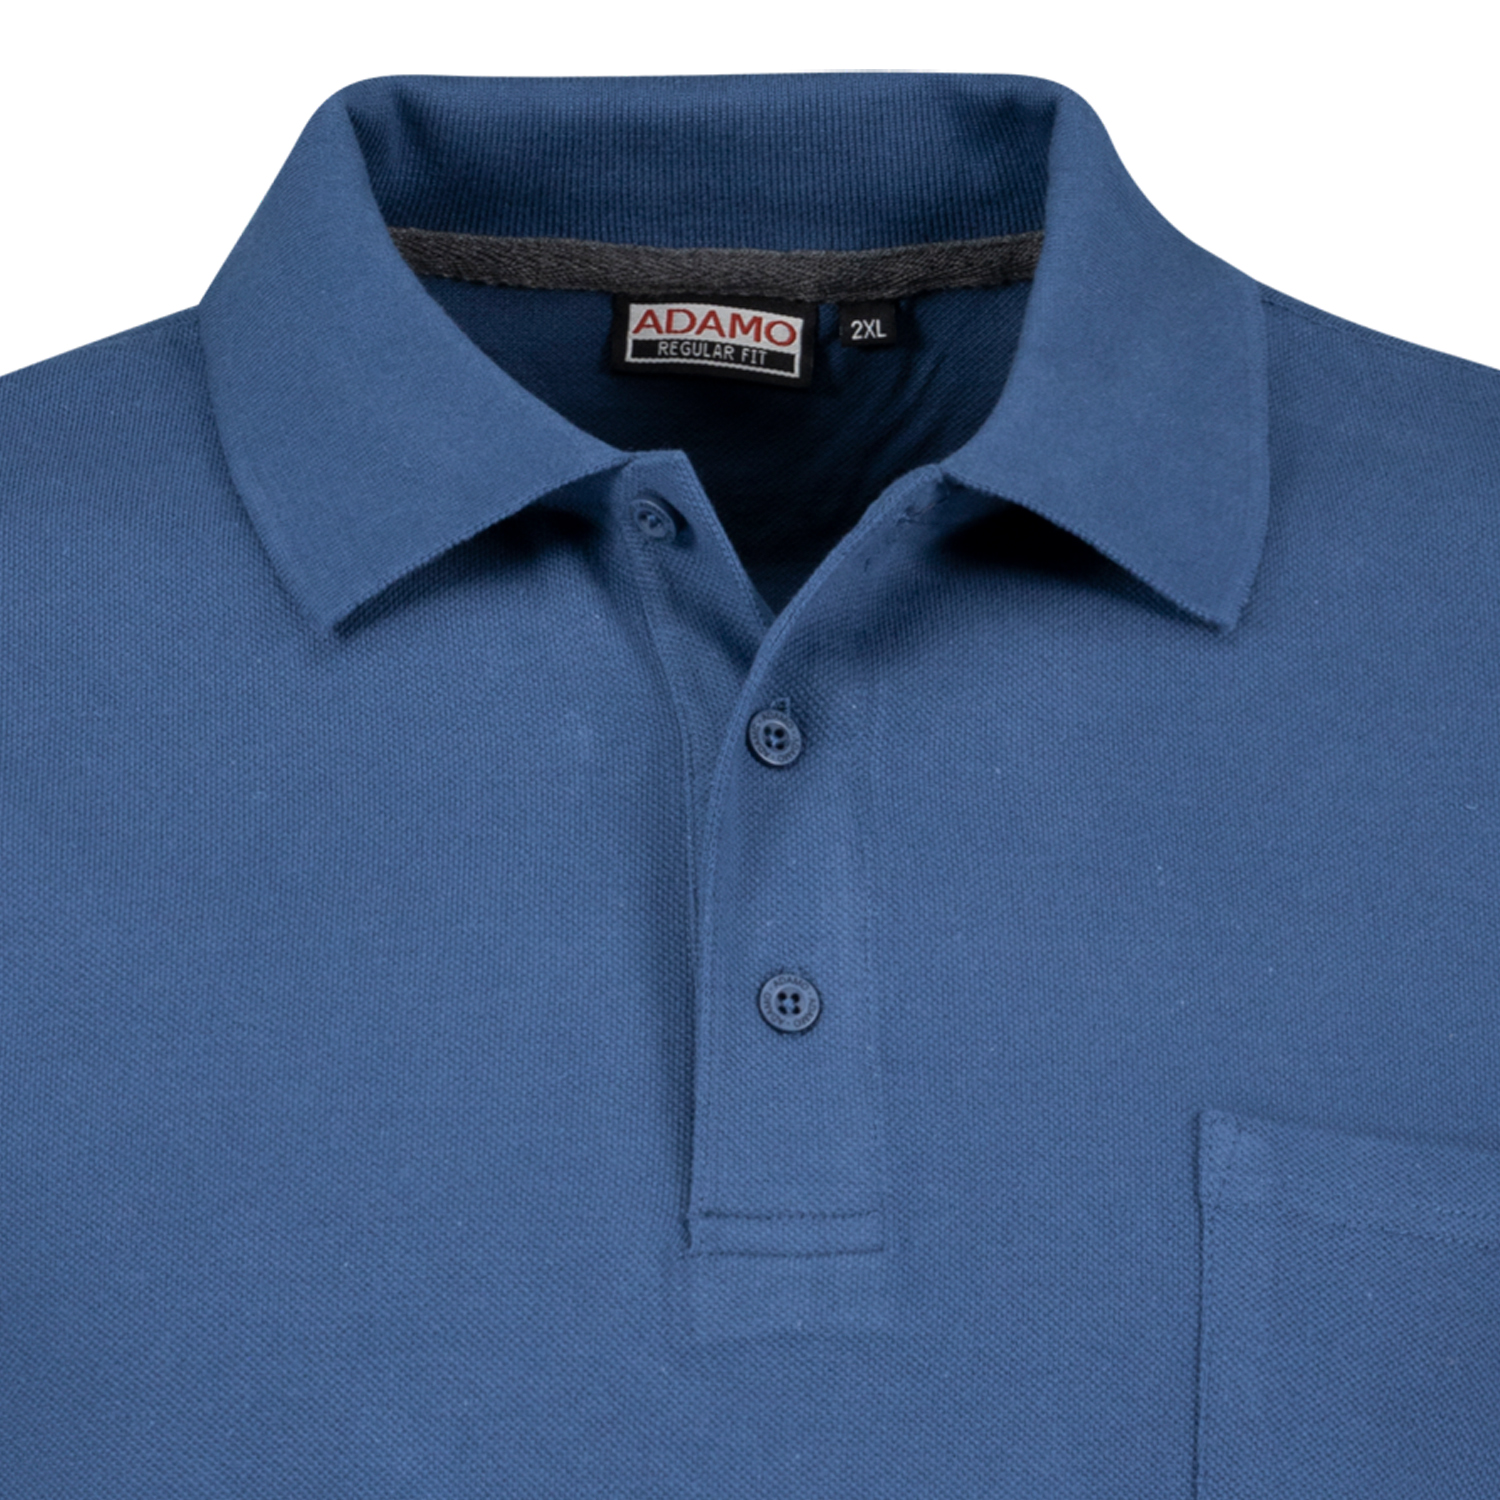 Admiralblaues Kurzarm Polo Shirt KENO von ADAMO in Pique Qualität für Herren in großen Größen bis 10XL